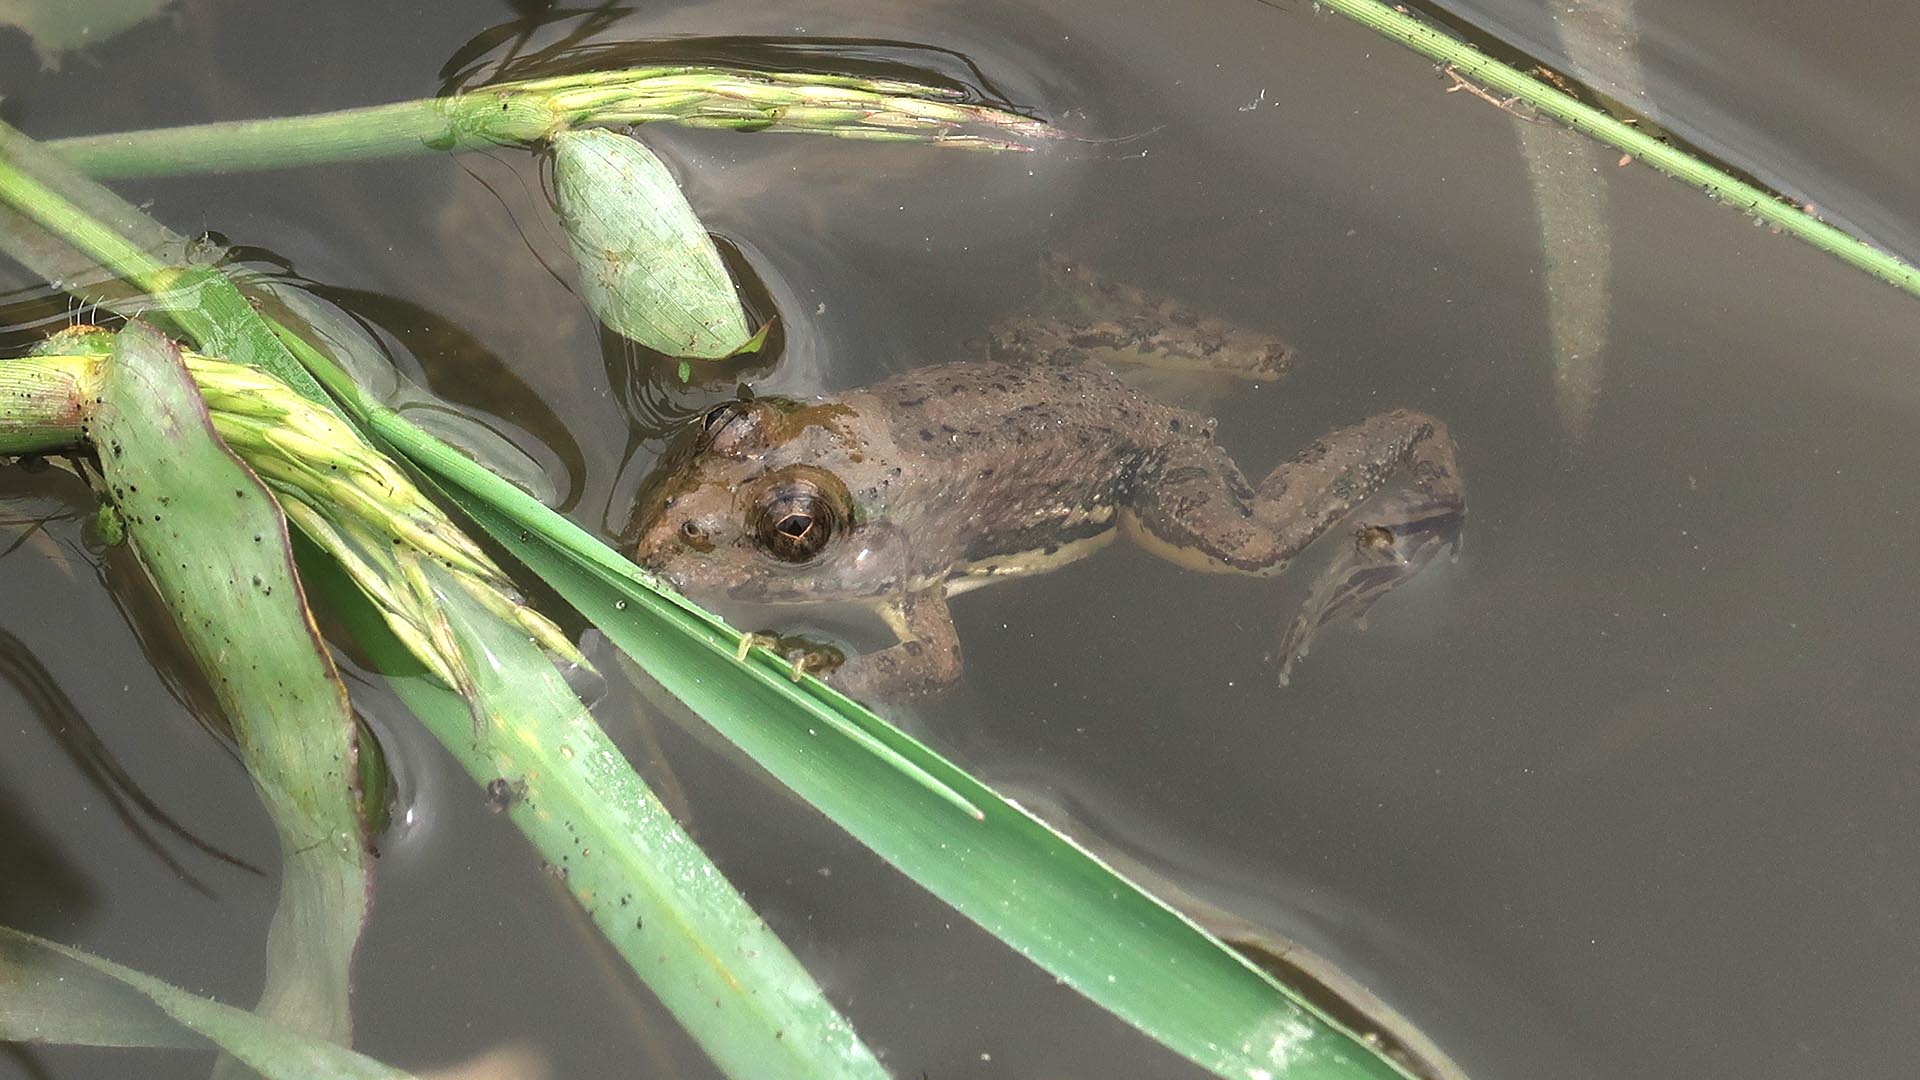 Kathmandu Frog Survey 2019